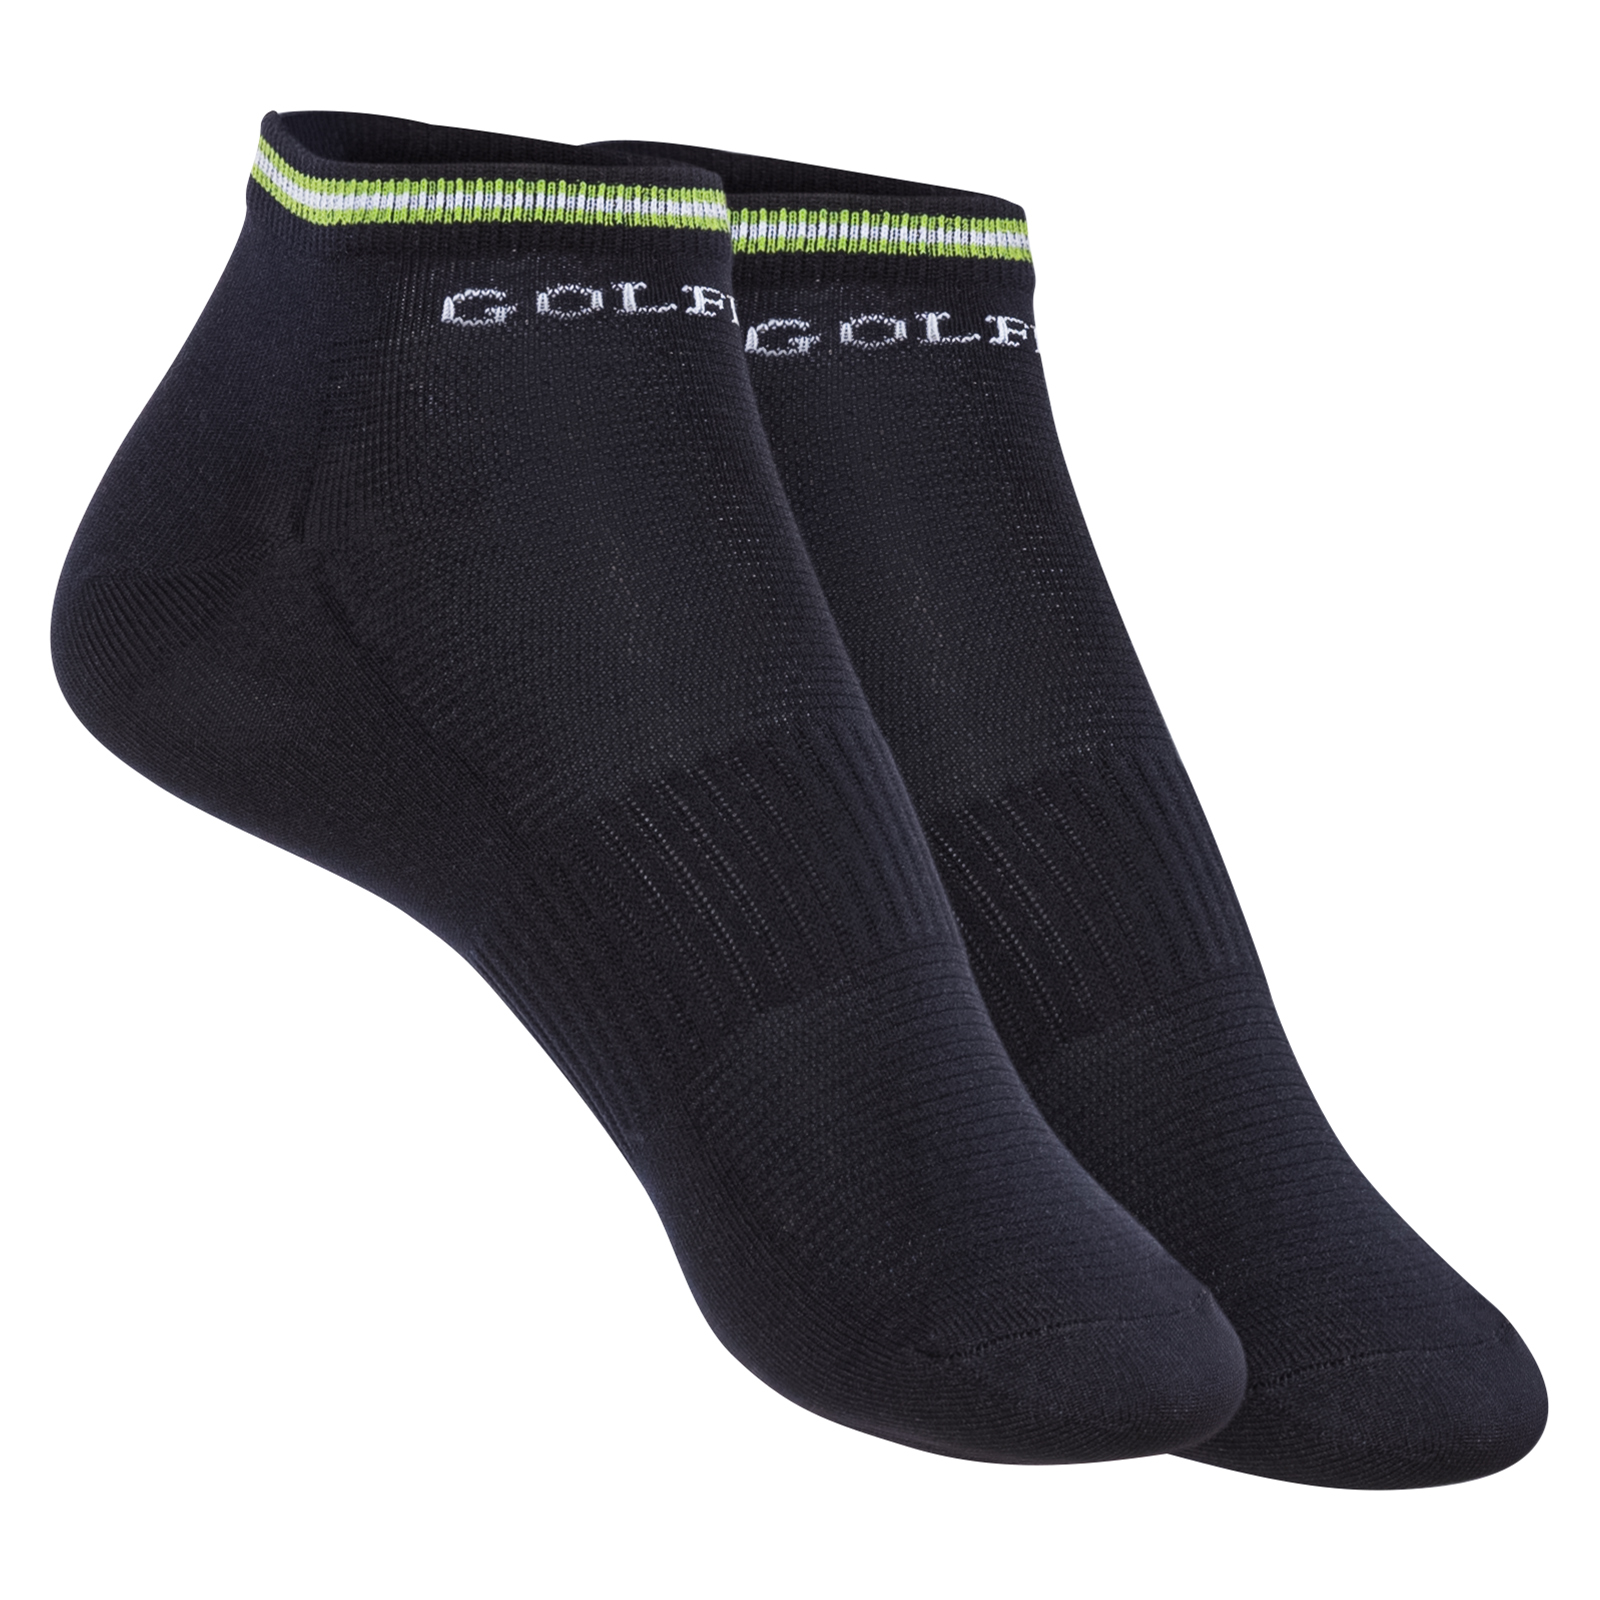 Practical men's golf socks 